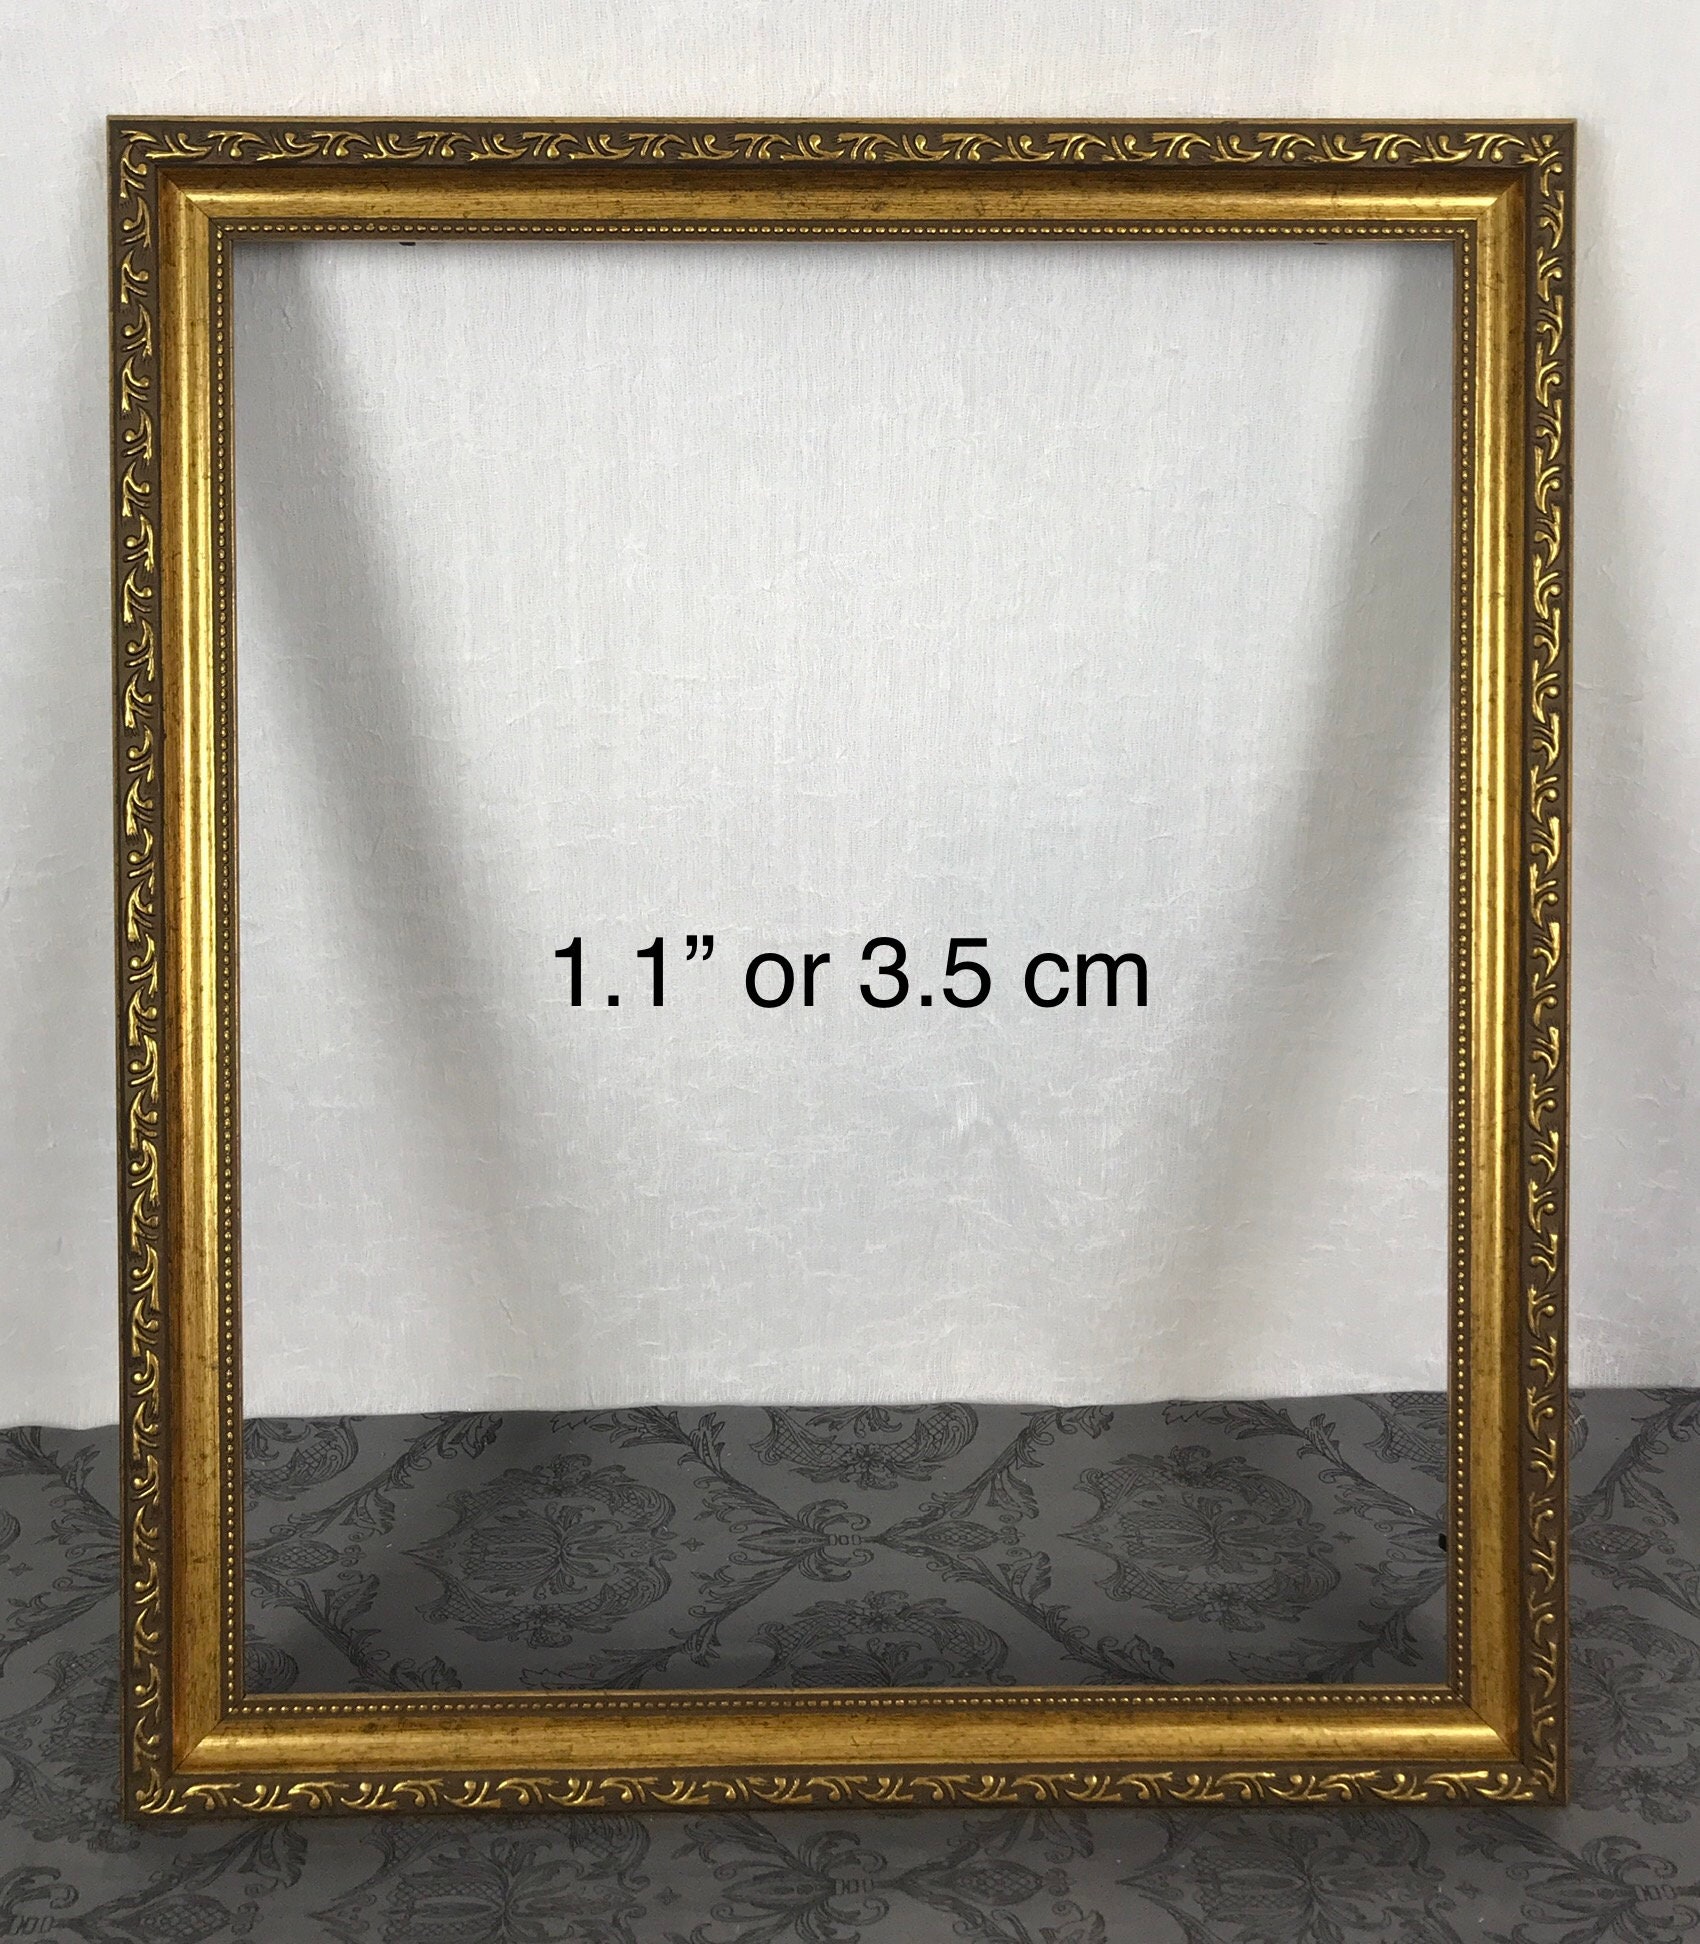 inner Size 24.5x34.5cm) Set Of 2 - Black Diamond Painting Frames